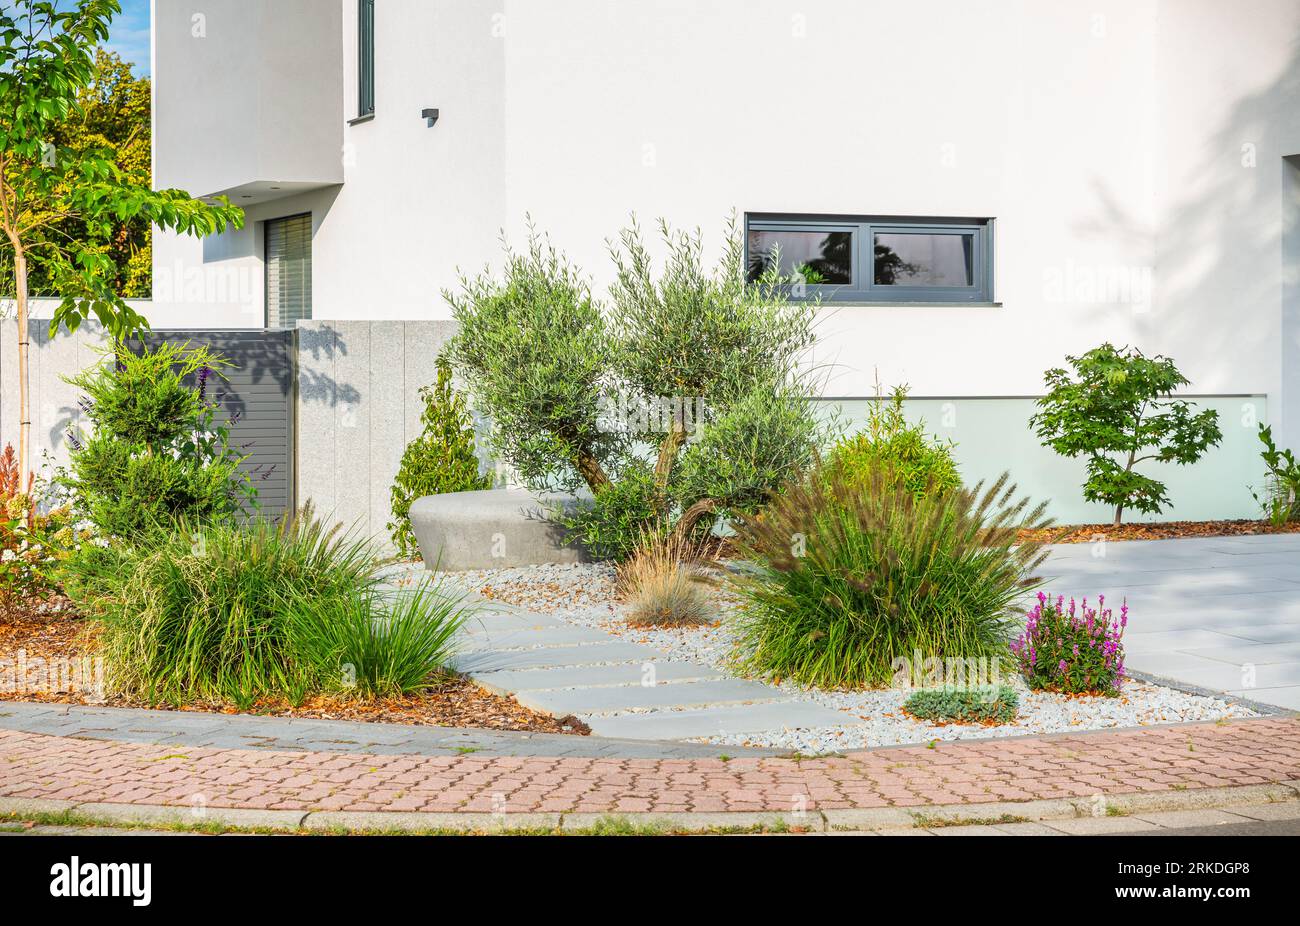 Il cortile di una casa moderna, dettagli del giardino con piante colorate, letti di erba secca circondati da rocce grigie. Foto Stock